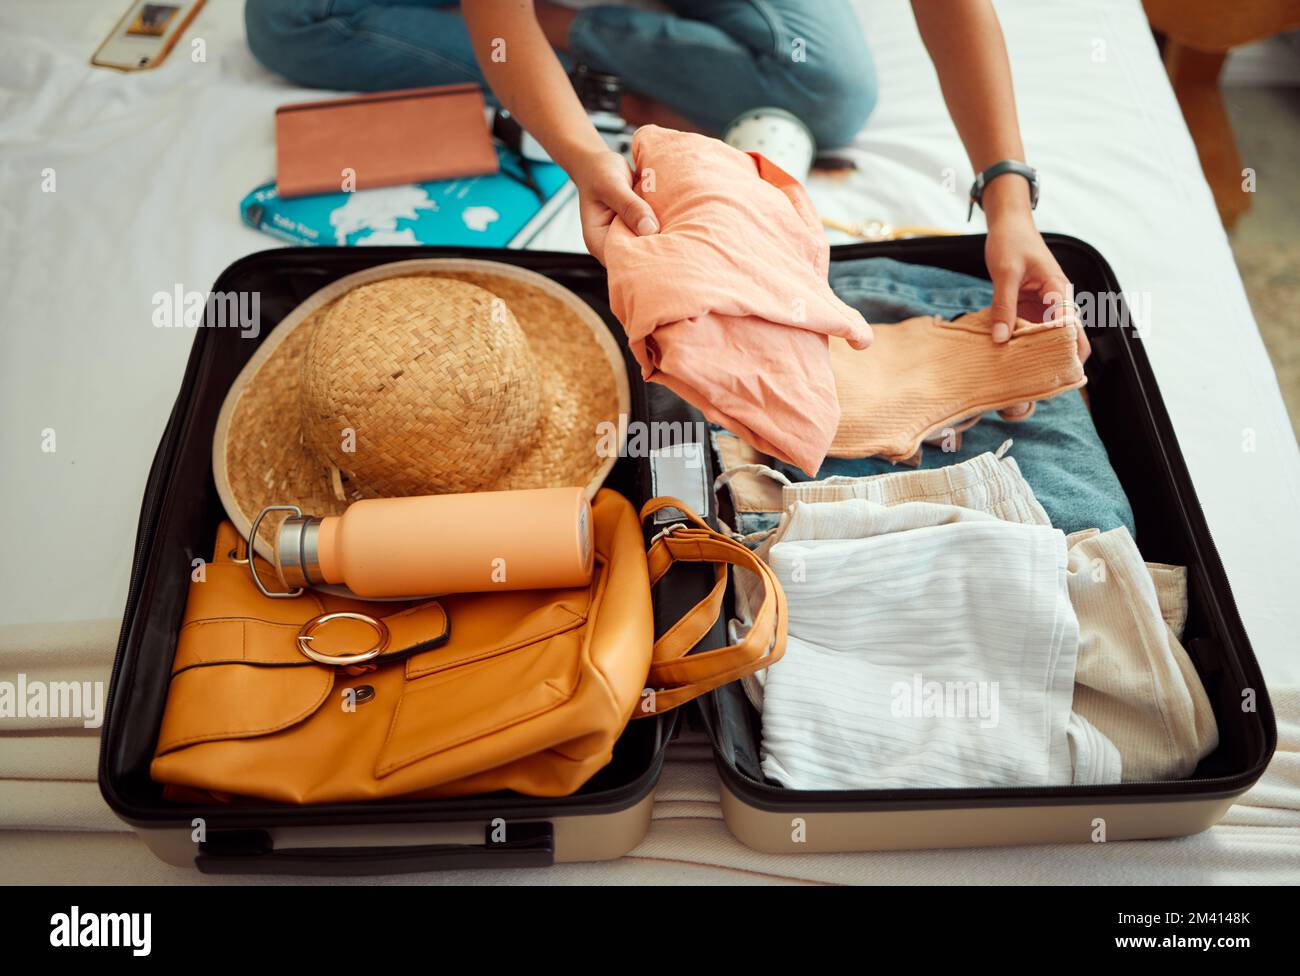 Mains, femme et valise sur un lit pour le voyage, l'aventure et les vacances d'été, l'emballage et les vêtements. Main, fille et bagages dans une chambre pour voyager Banque D'Images